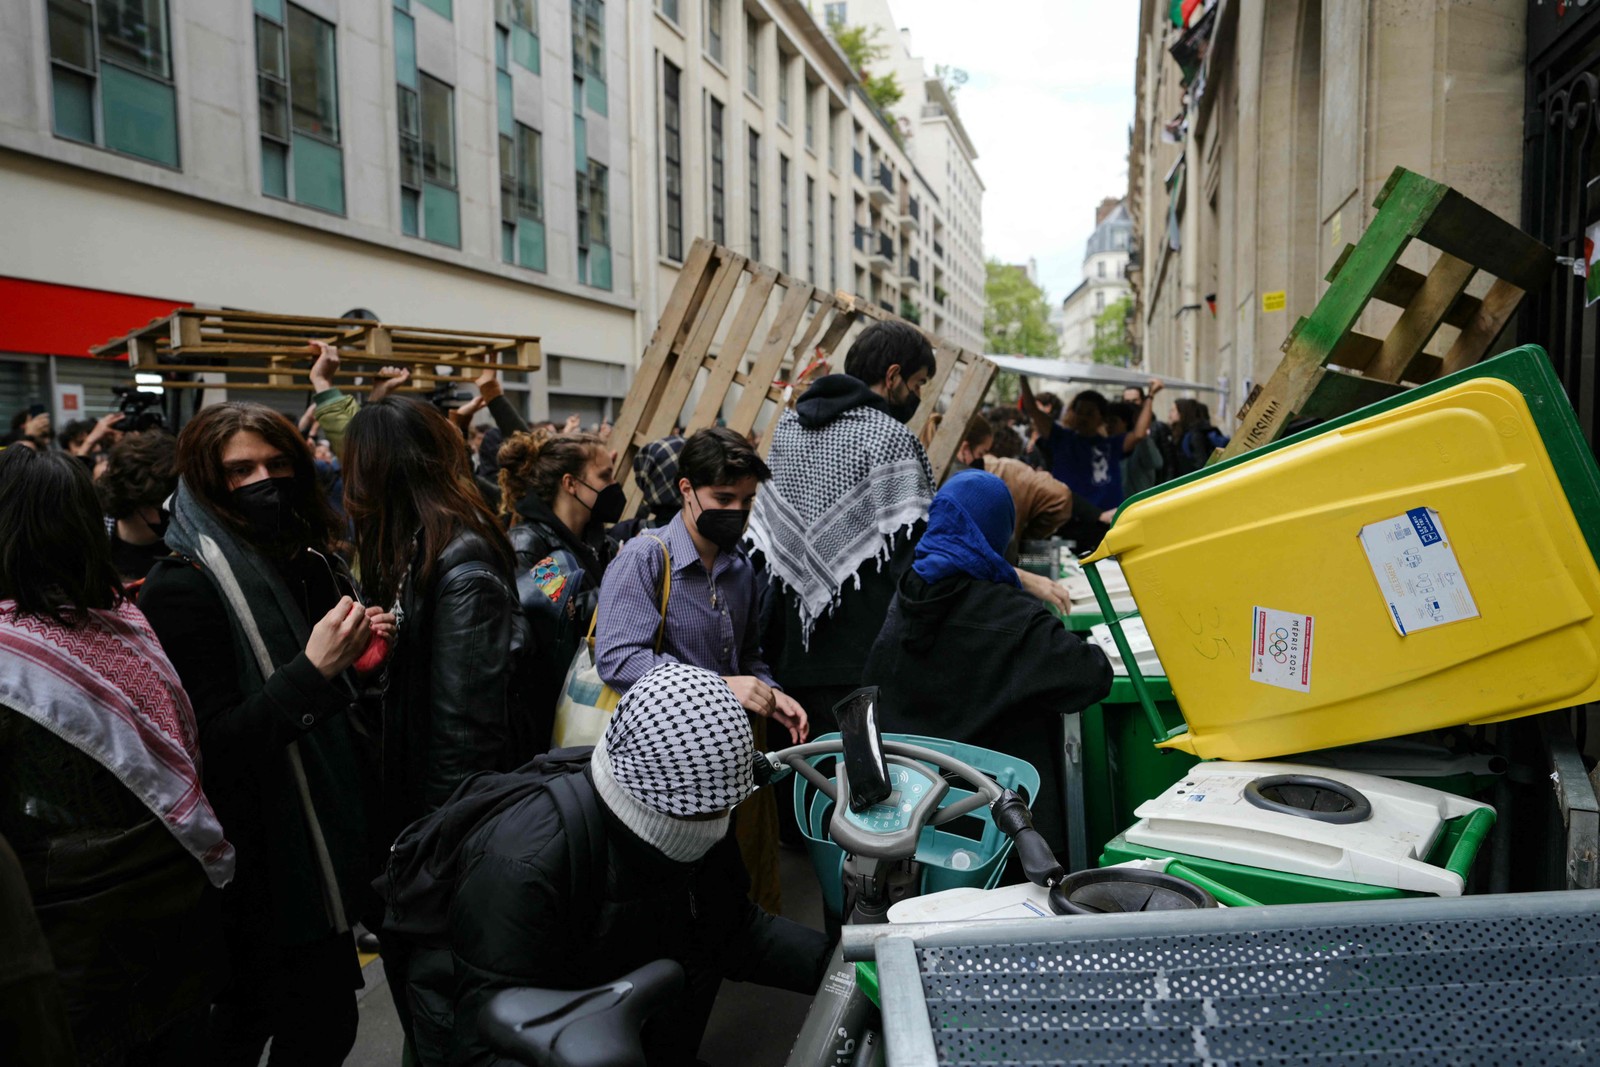 Manifestantes barricam a entrada do Instituto de Estudos Políticos (Sciences Po Paris) com caixotes e paletes de madeira enquanto participam numa manifestação em frente ao edifício ocupado por estudantes, em apoio aos palestinianos, em Paris — Foto: Dimitar DILKOFF / AFP